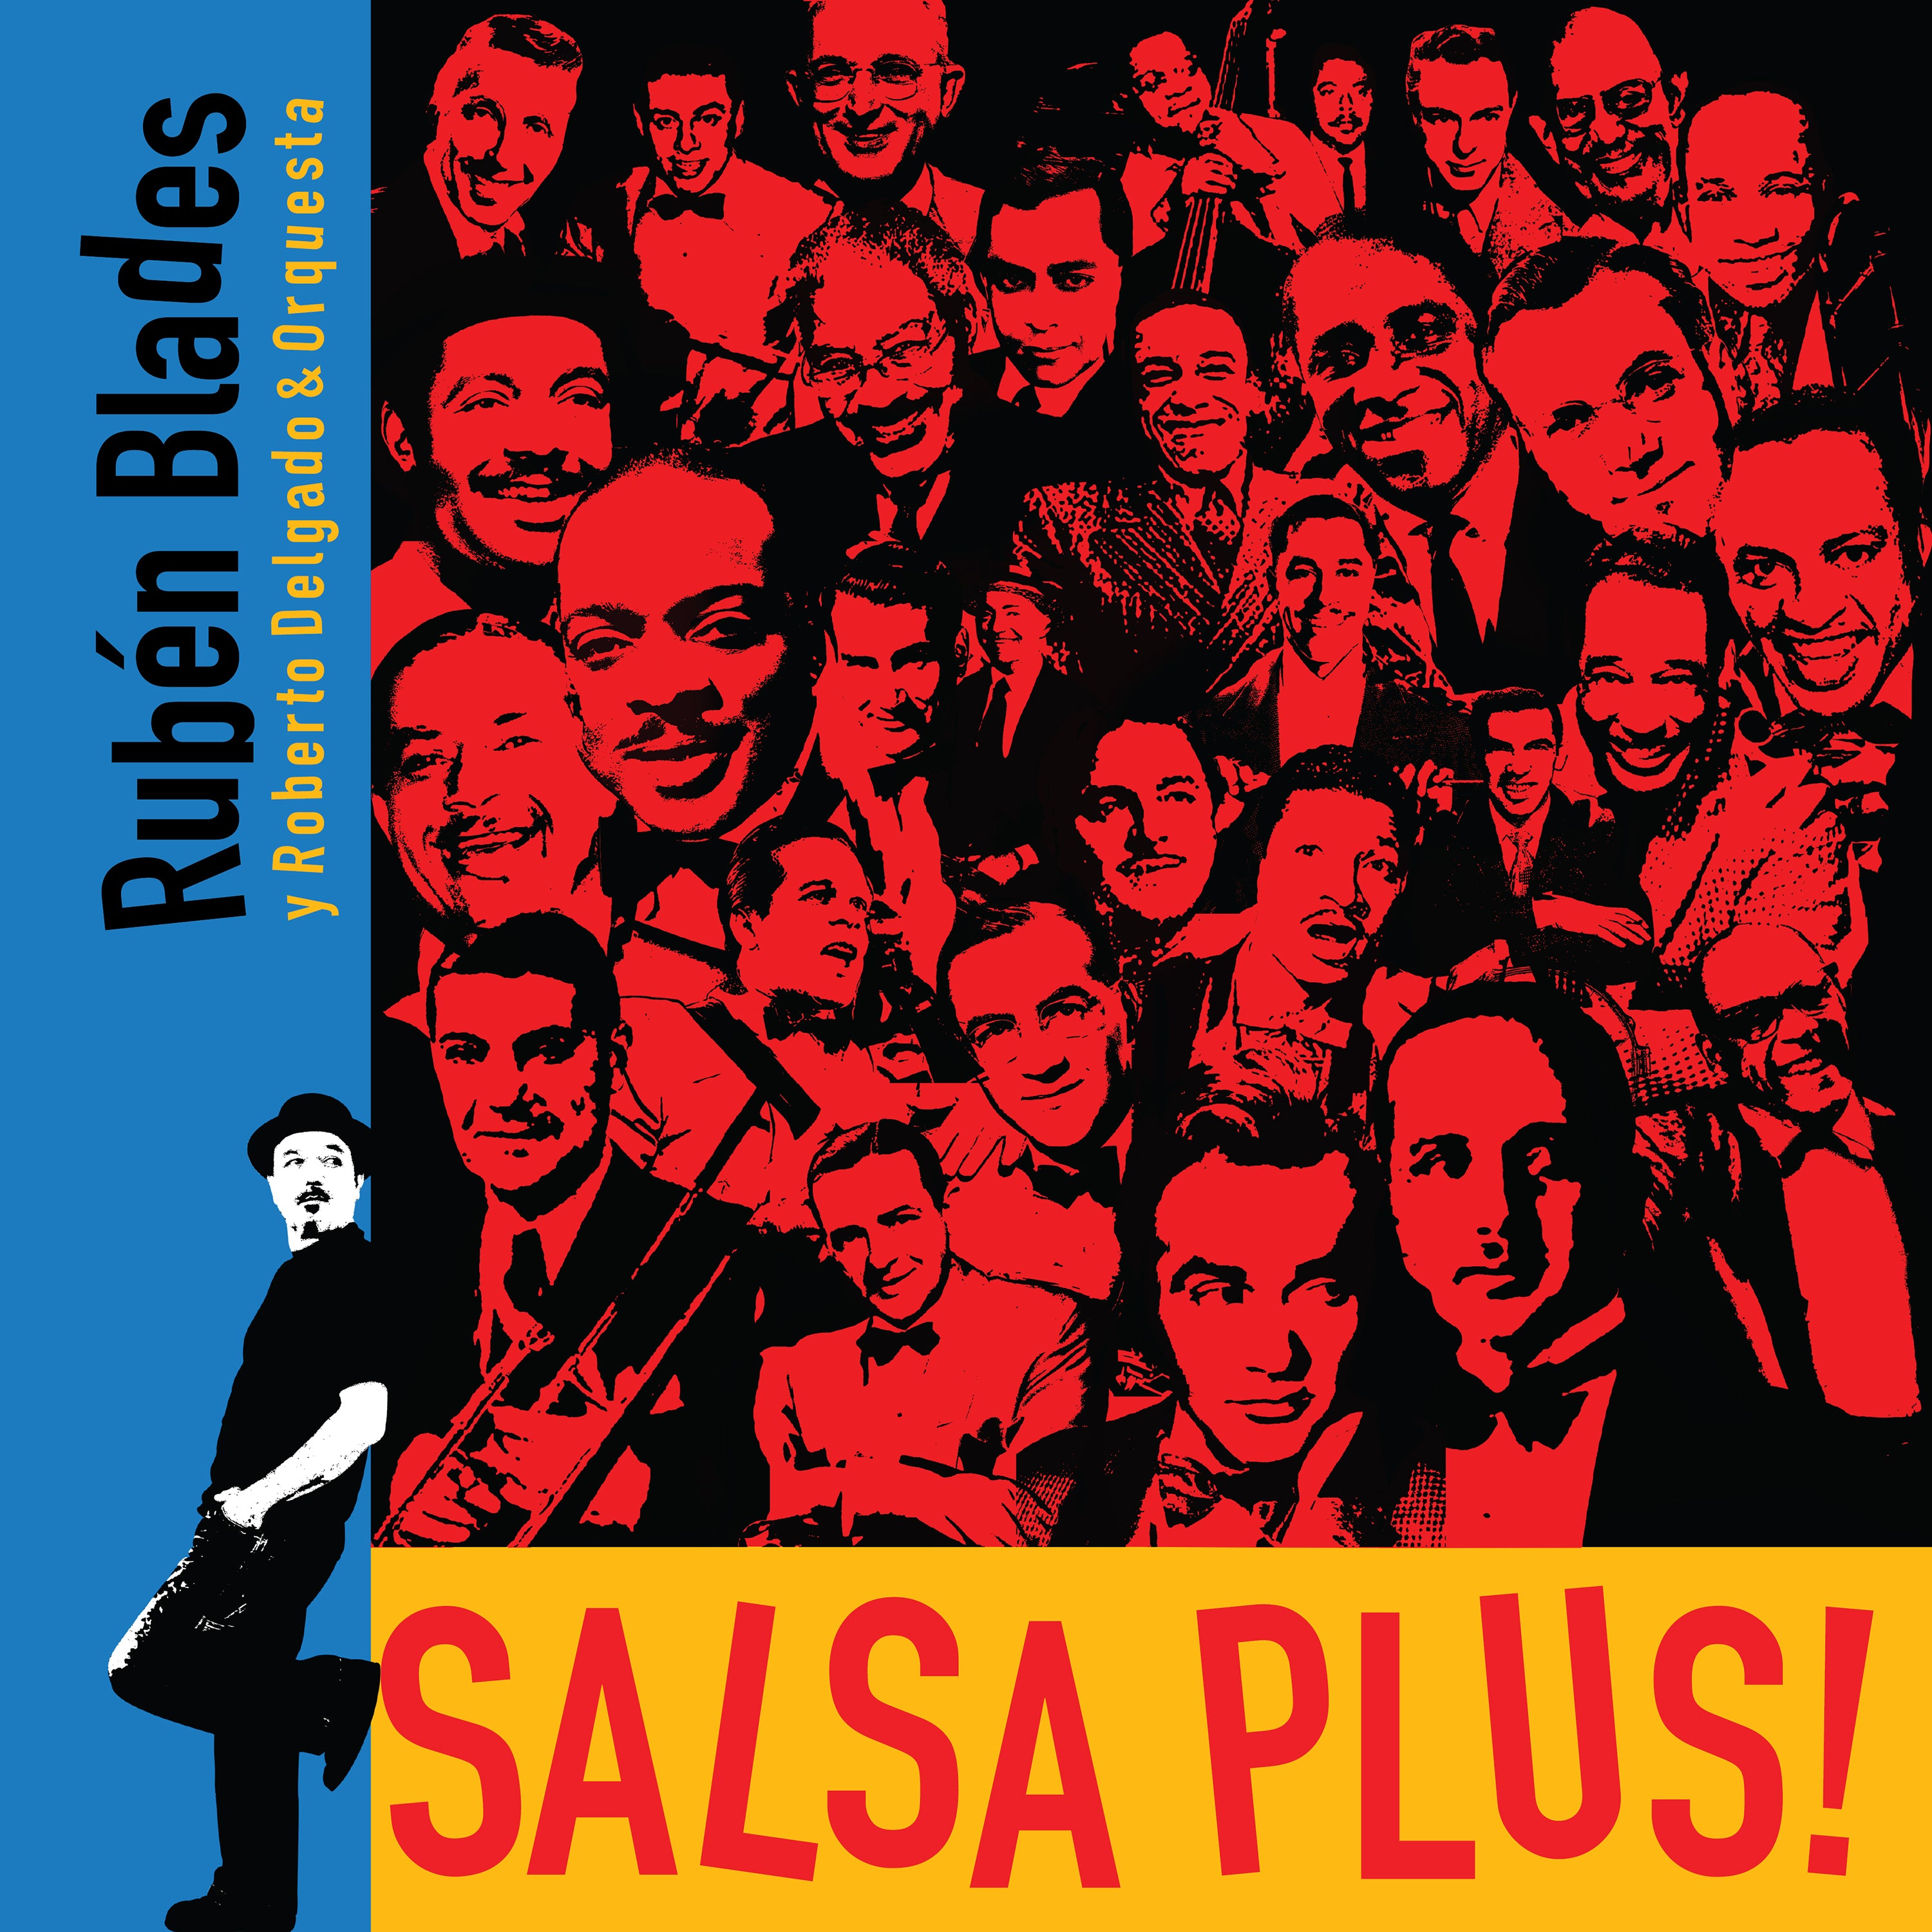 Rubén Blades con Roberto Delgado y Orquesta - "SALSA PLUS!"